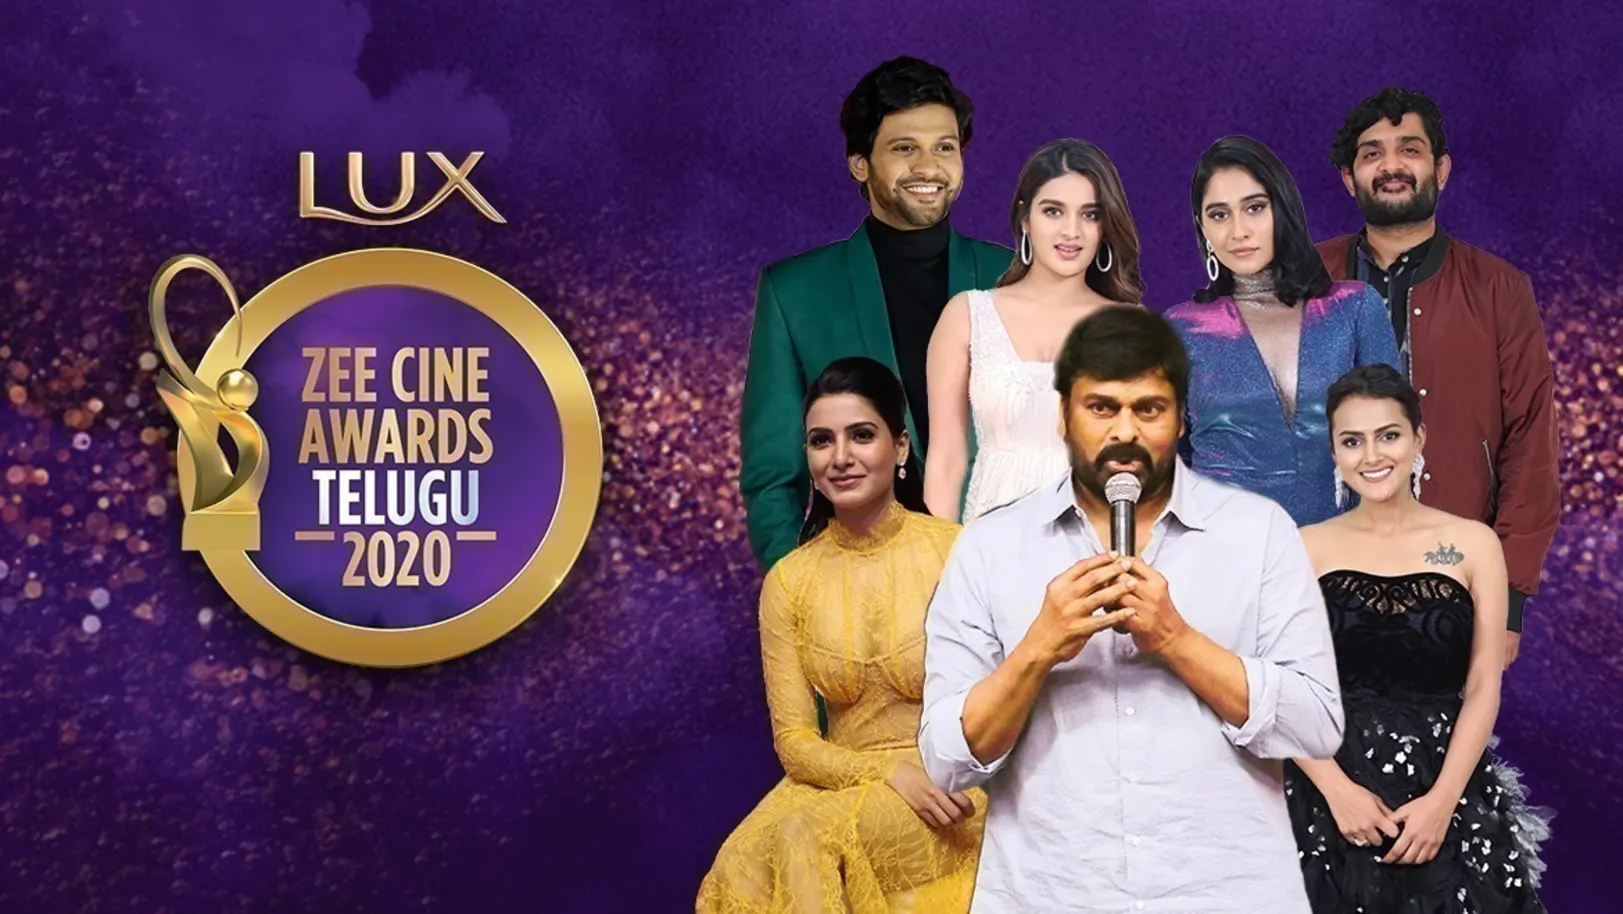 Zee Cine Awards Telugu 2020 TV Show